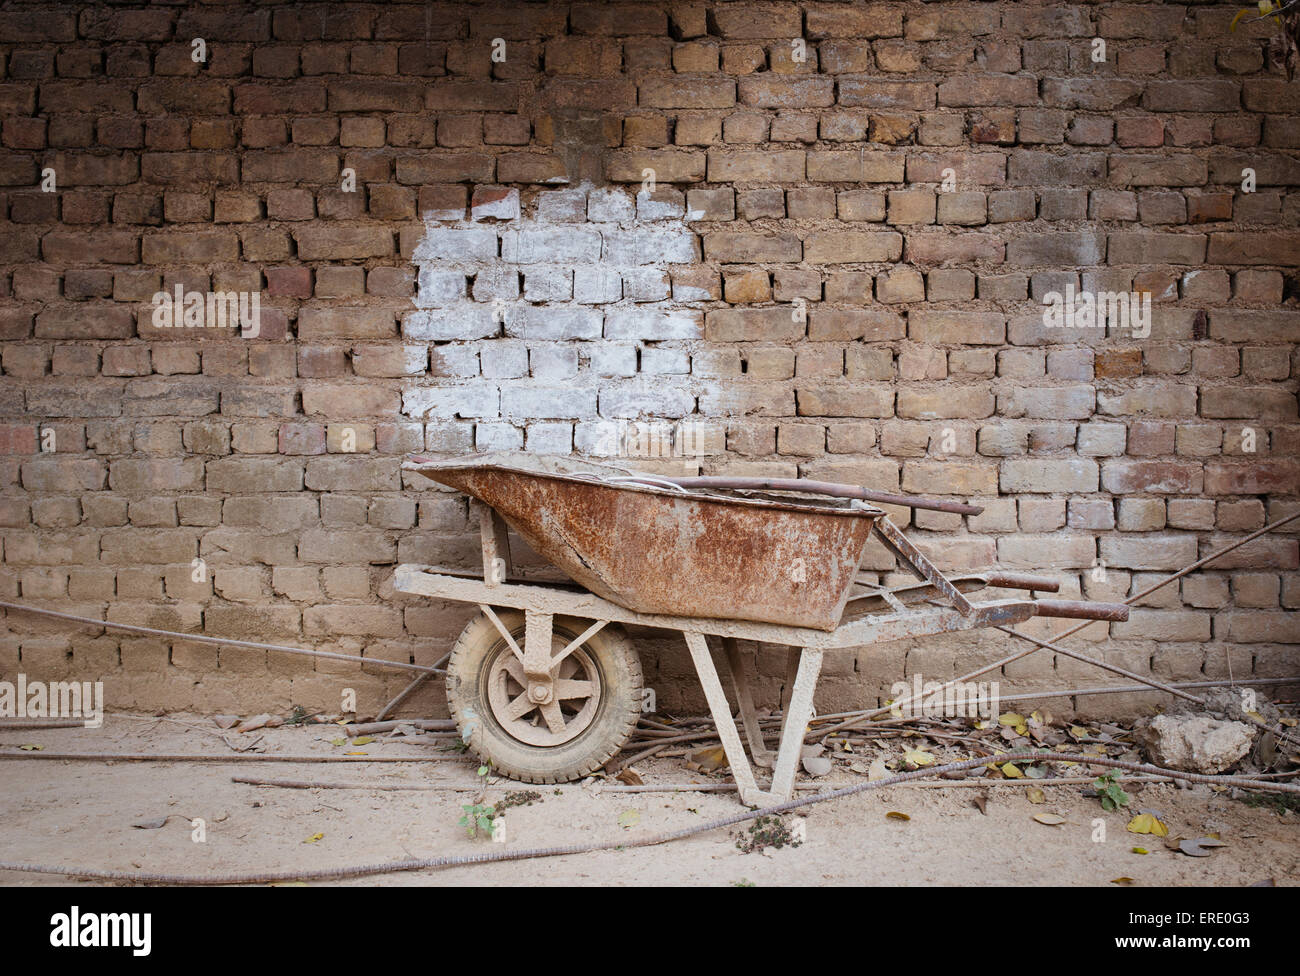 Empty wheelbarrow near brick wall Stock Photo